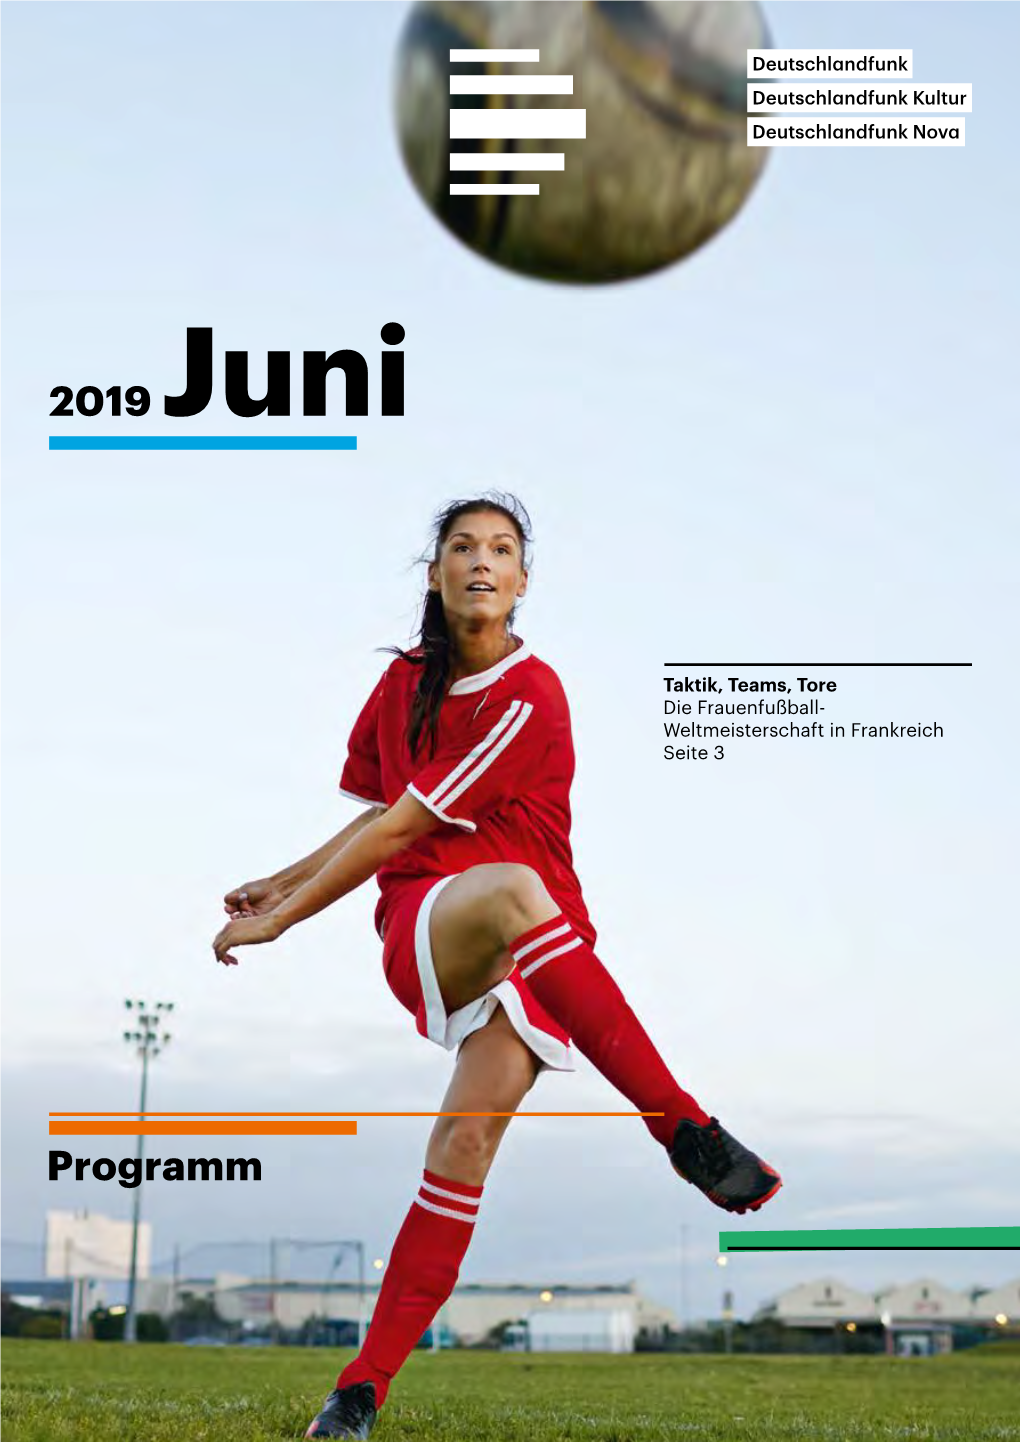 Programm 2019 Juni